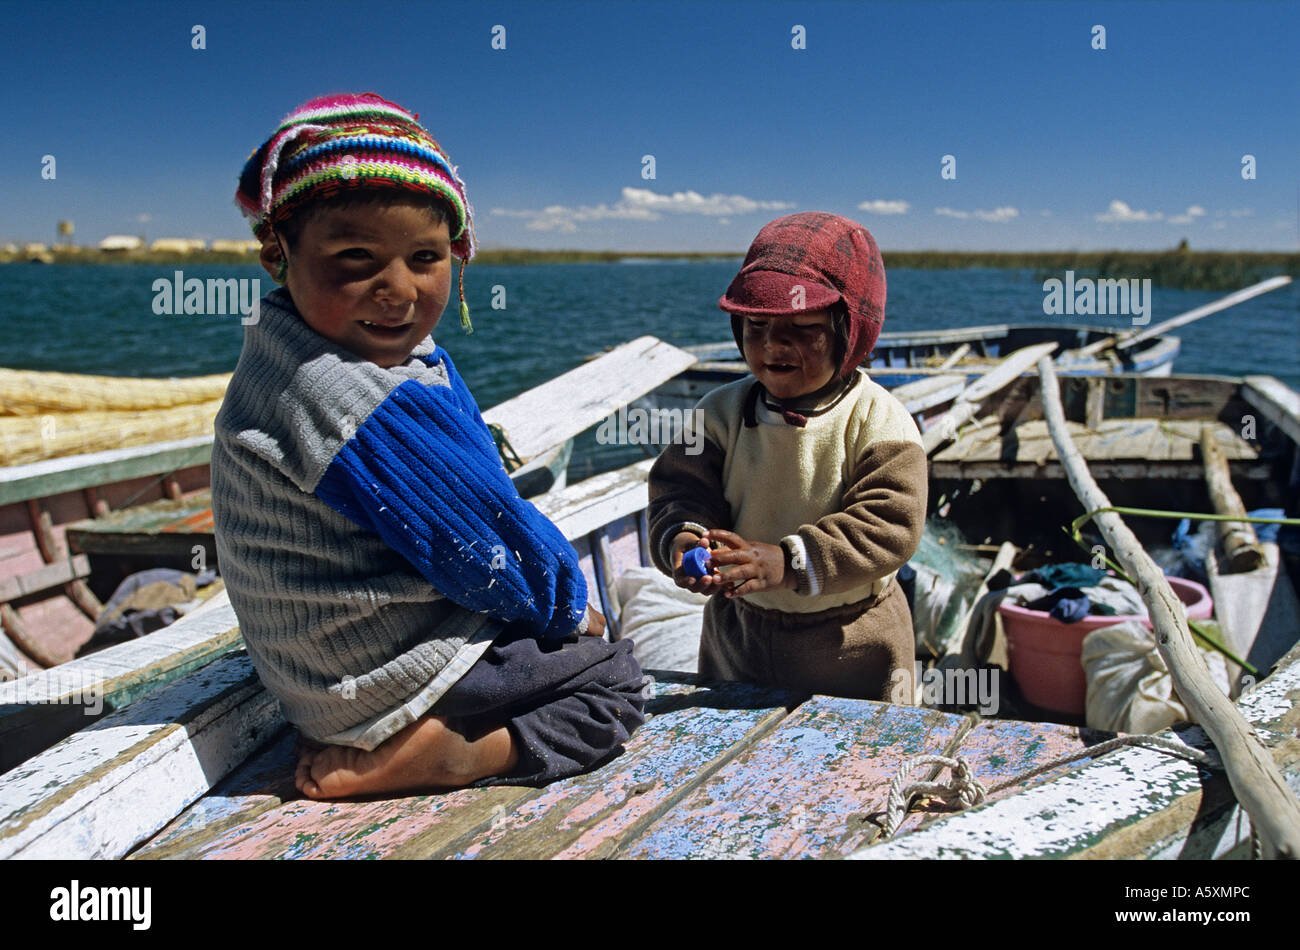 Peruvian kids on a small craft of the Lake Titicaca (Peru). Gamins sur une barque du lac Titicaca (Pérou). Stock Photo